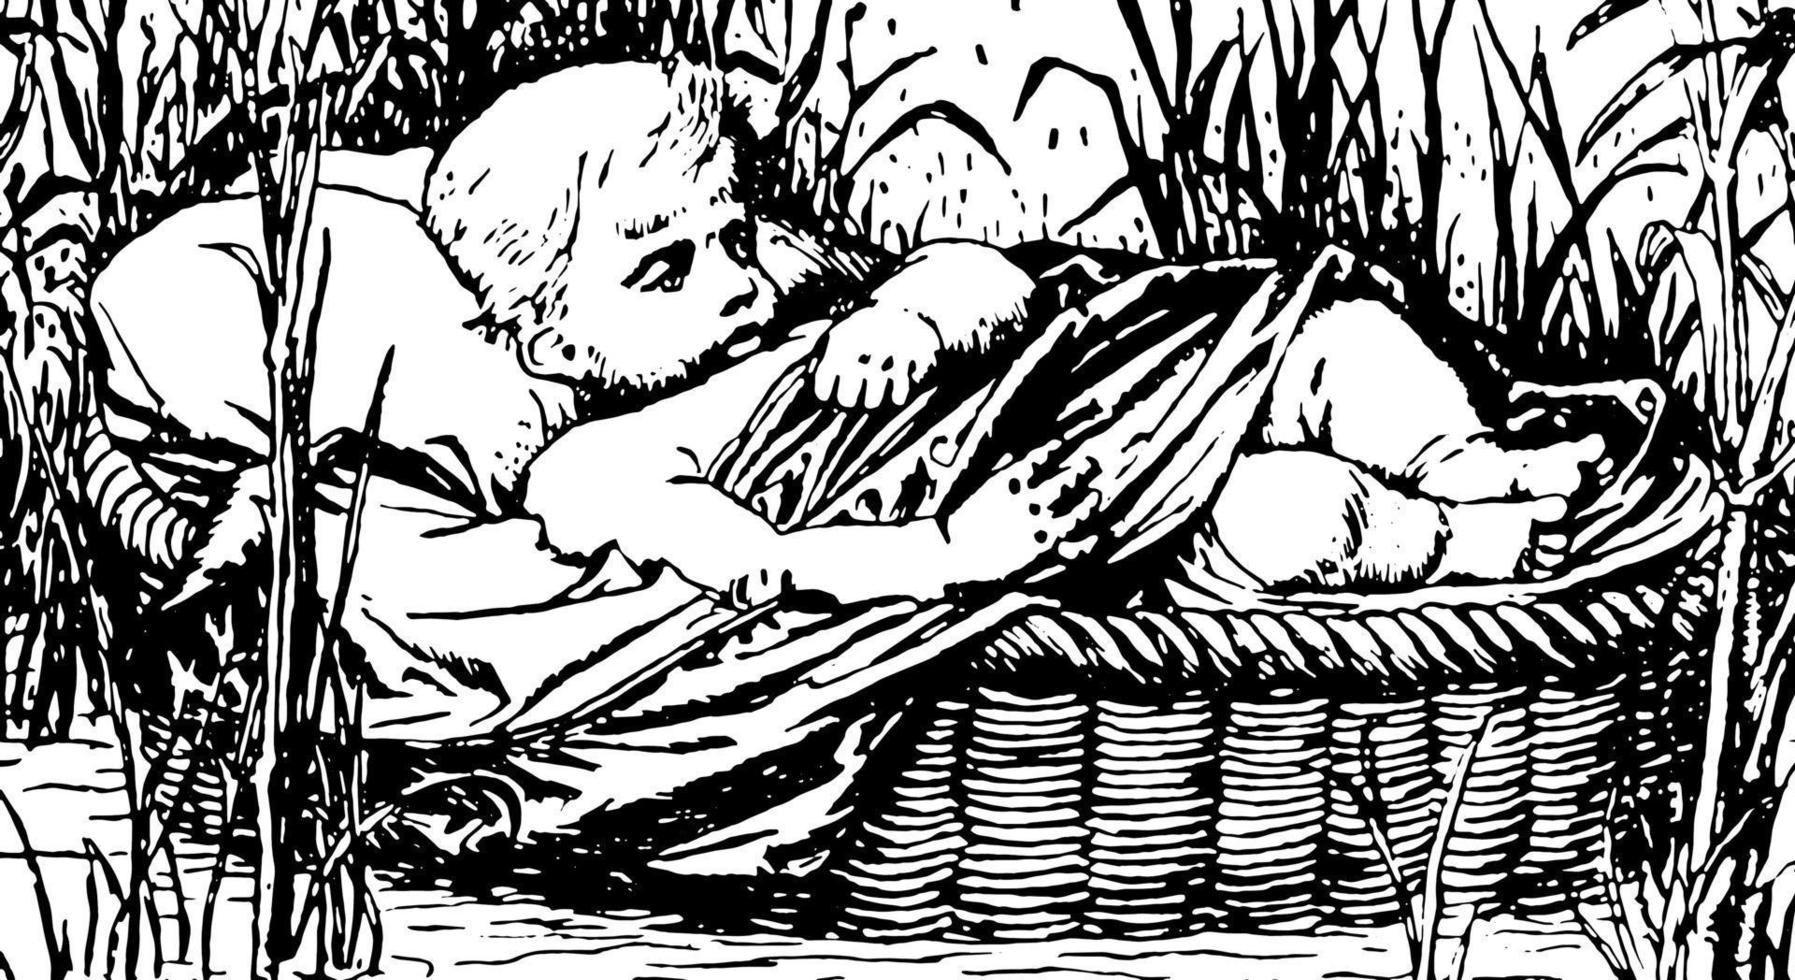 niño en canasta flotando río abajo, grabado antiguo. vector